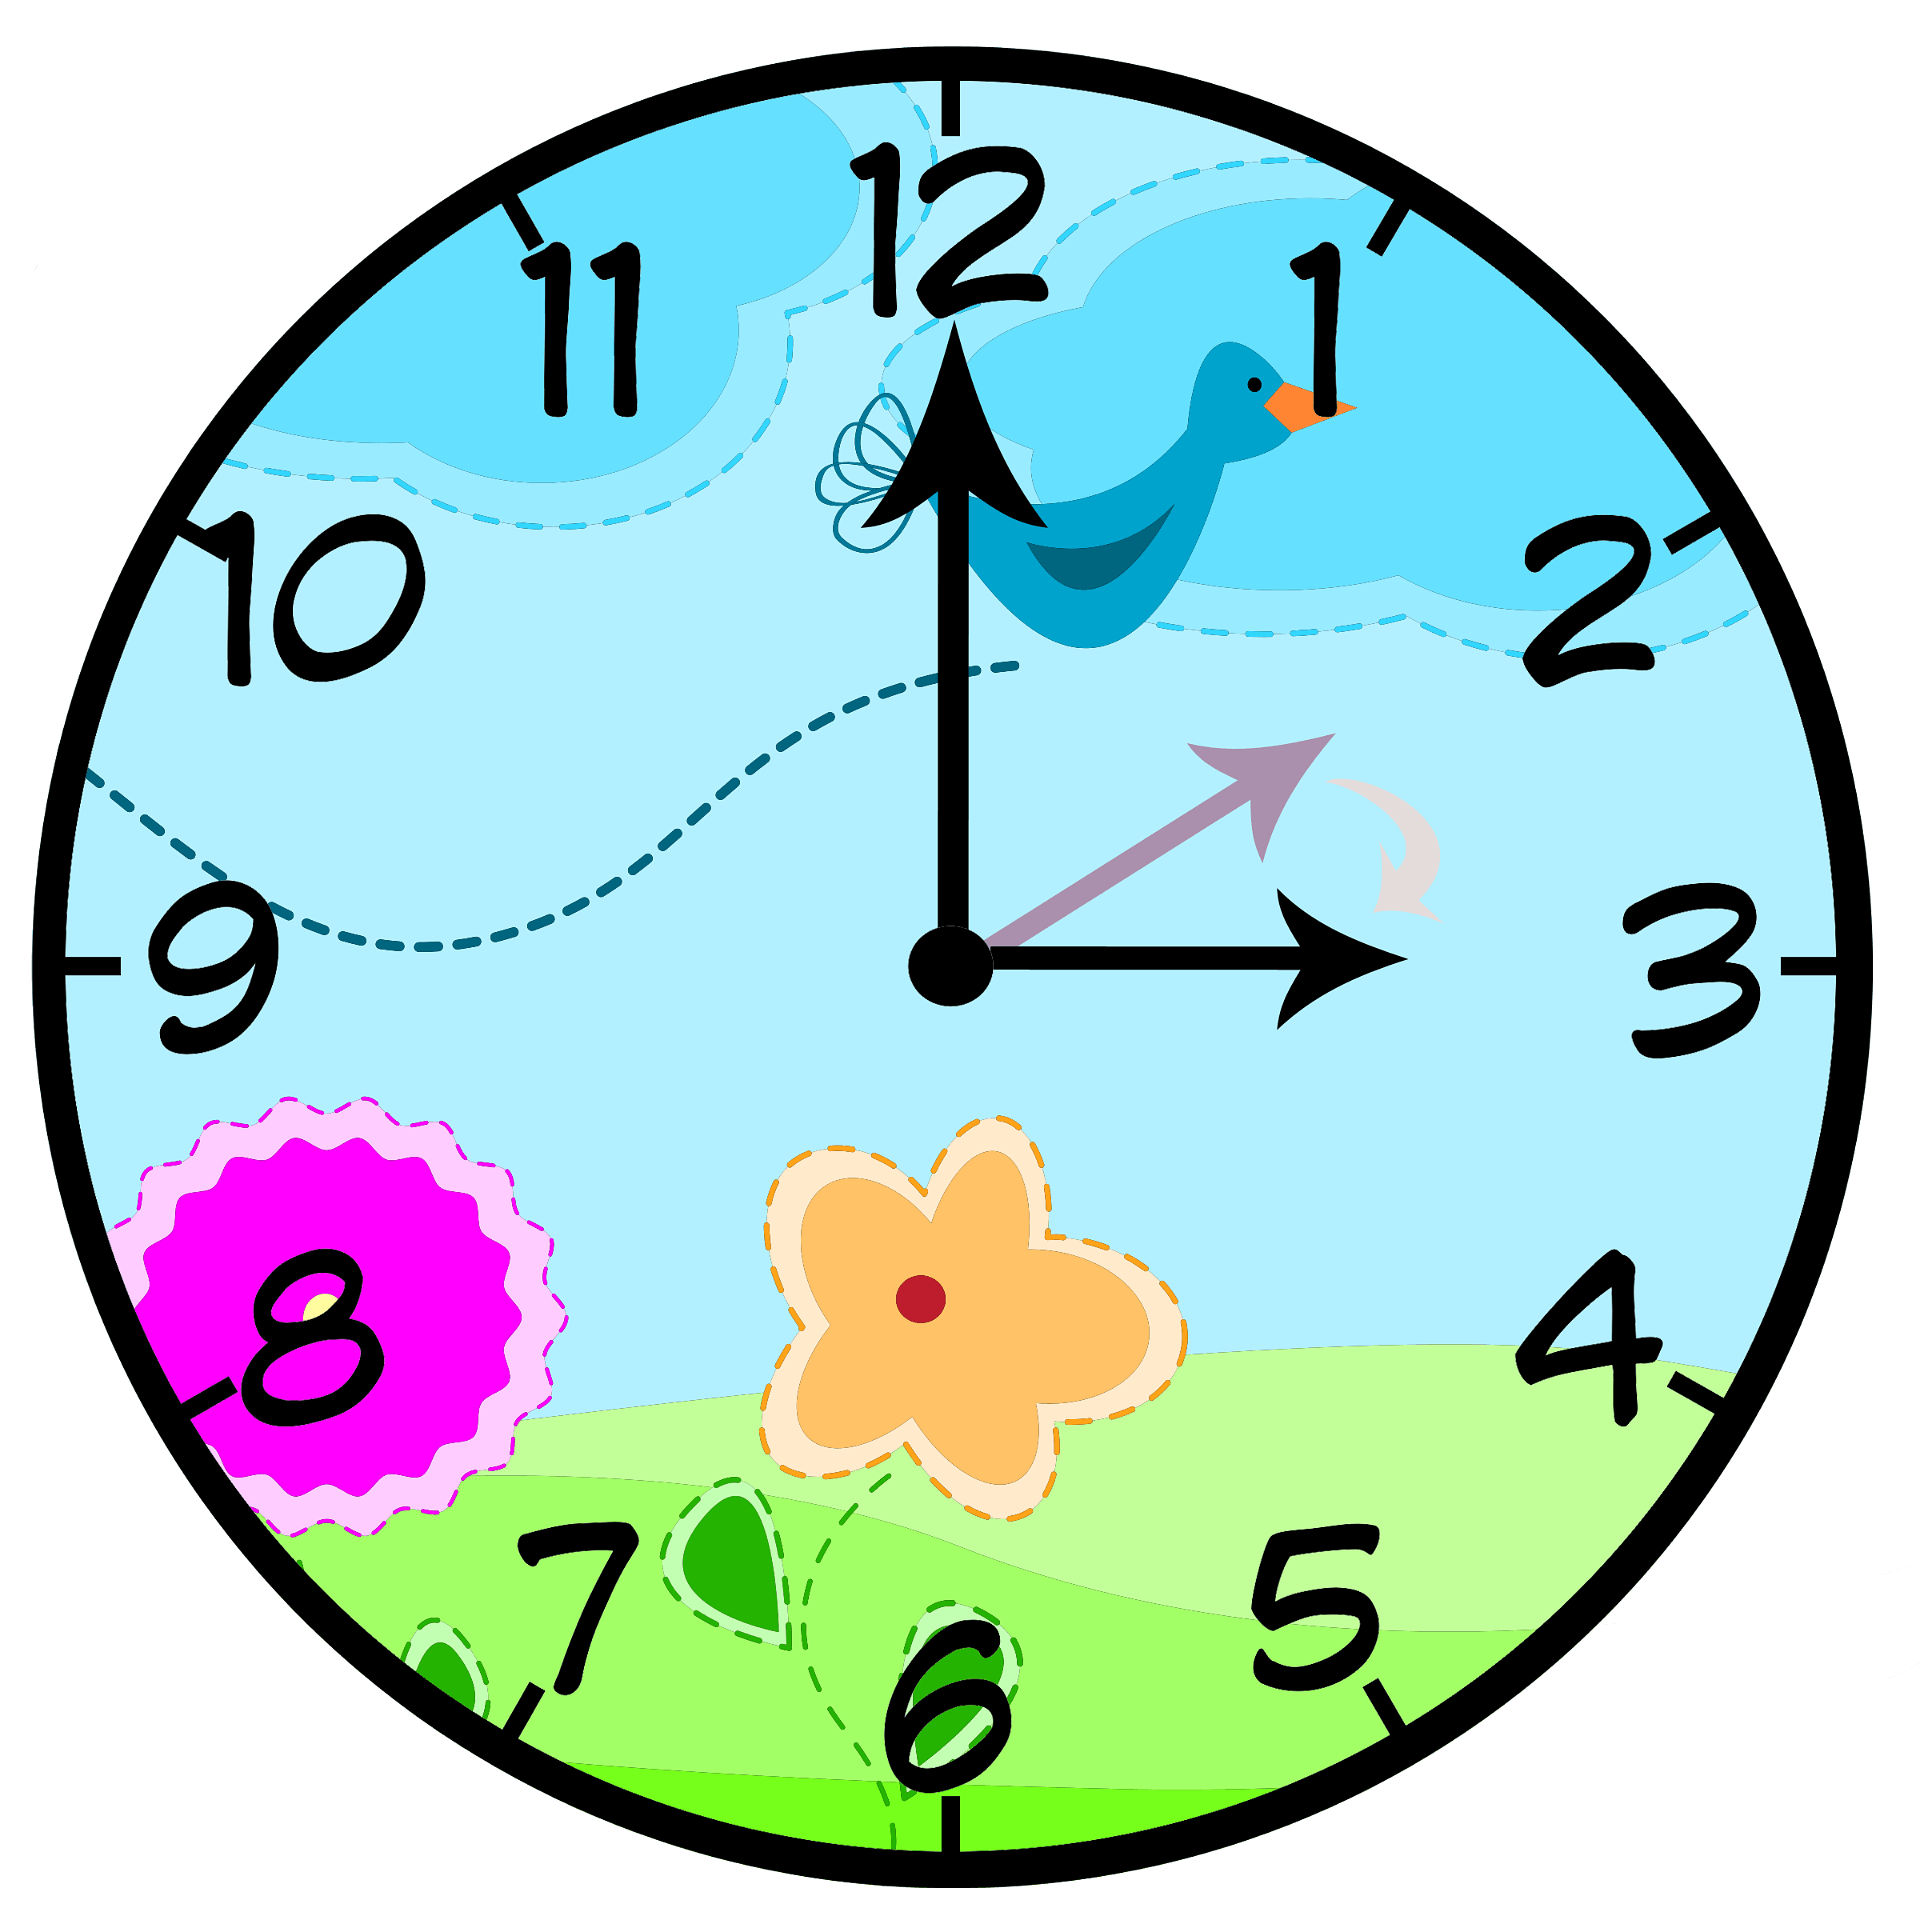 clocks - Clip Art Library